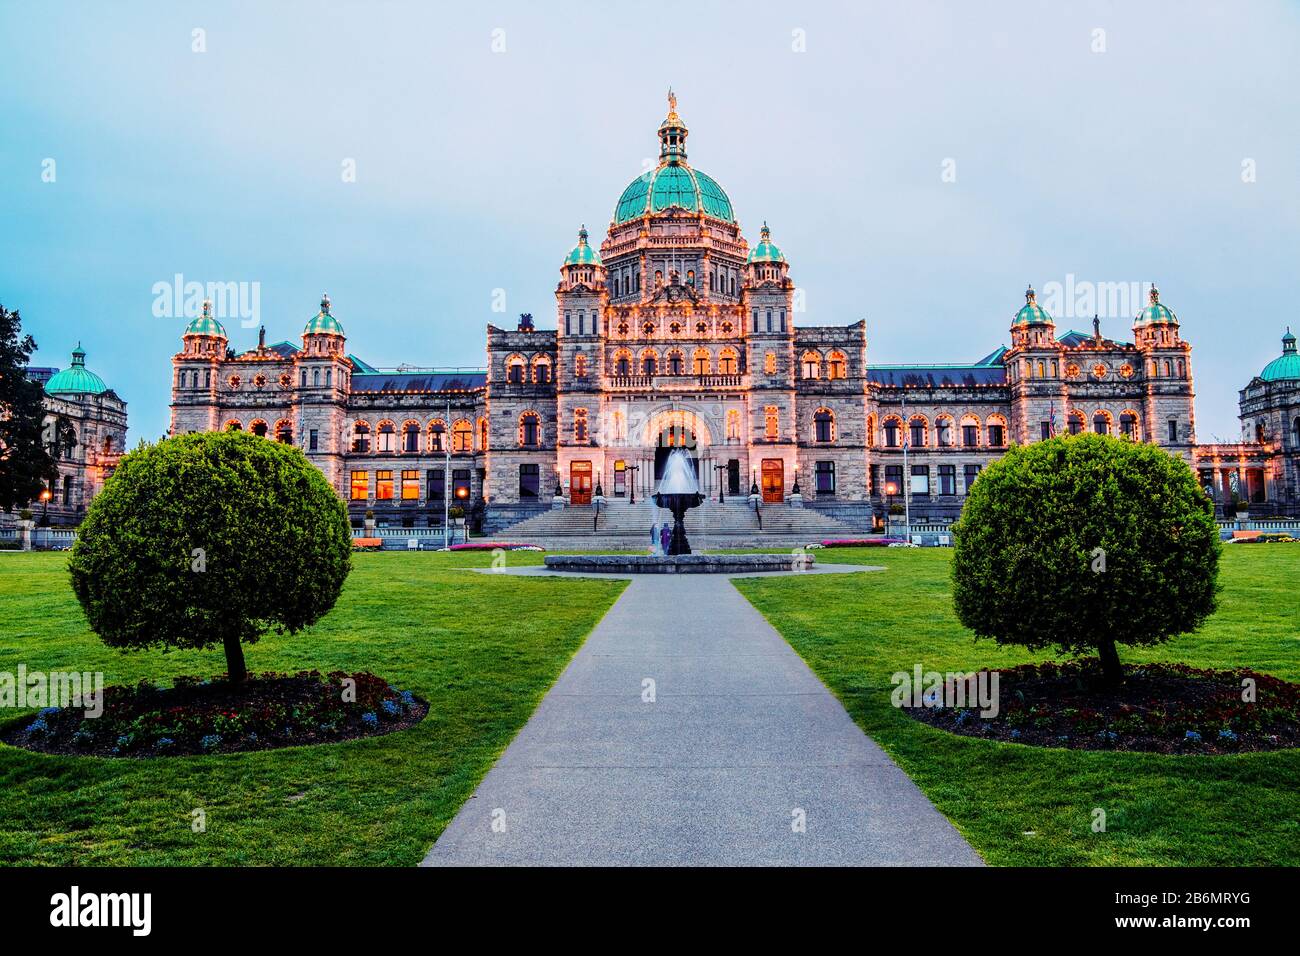 Parlamentsgebäude von British Columbia mit formalem Garten und Springbrunnen, Victoria, British Colubmia, Kanada Stockfoto